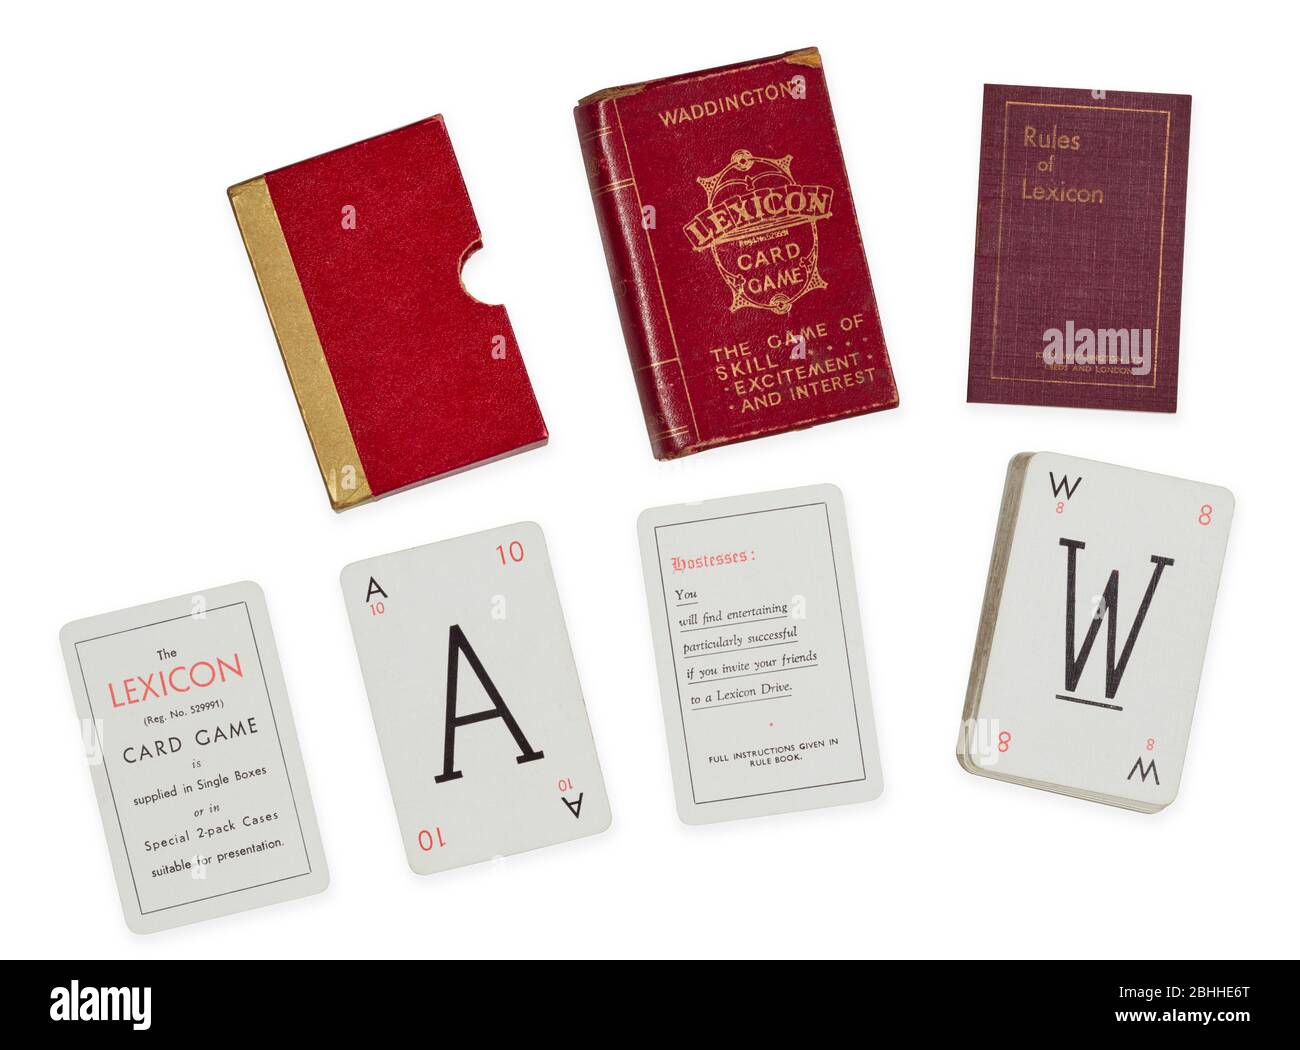 El popular juego de los años 30 de Lexicon con reglas de libro, slipcase y tarjetas Foto de stock